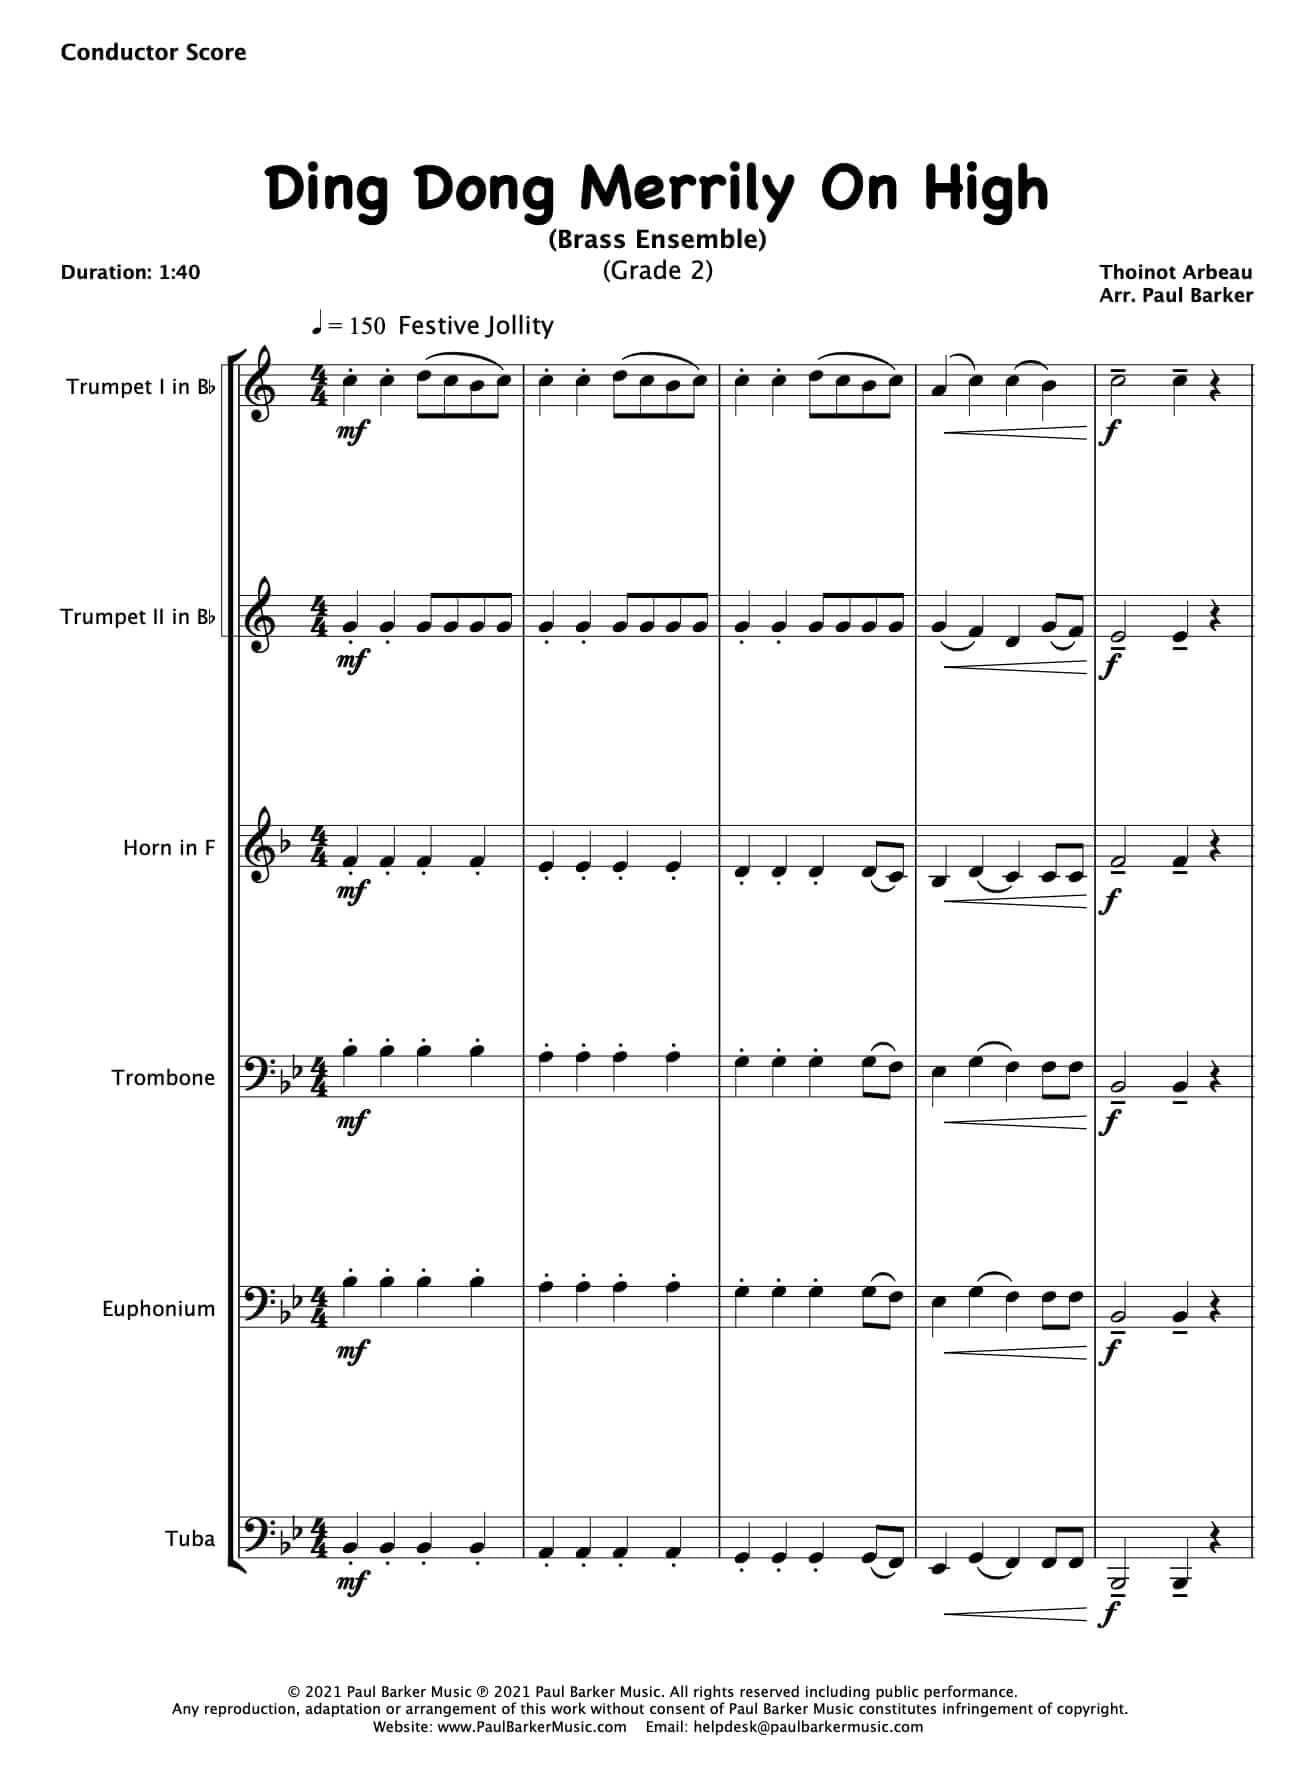 Christmas Brass Ensembles - Book 1 - Paul Barker Music 